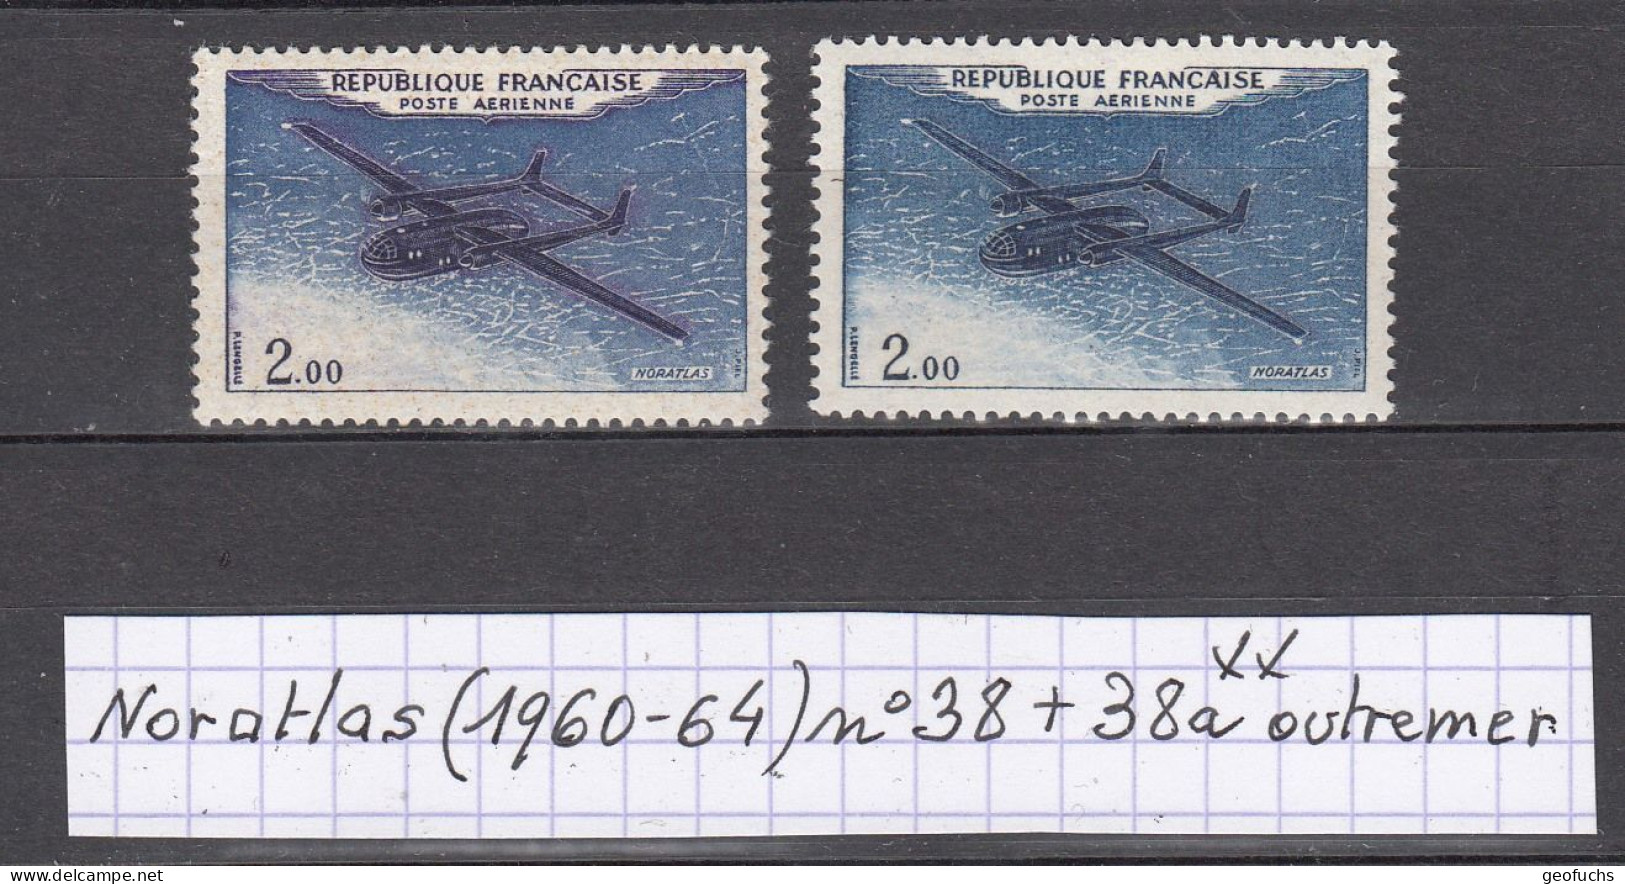 France Prototypes Noratlas (1960-64) Poste Aérienne Y/T Variété N° 38 + 38a (outremer) Neufs ** - Nuovi